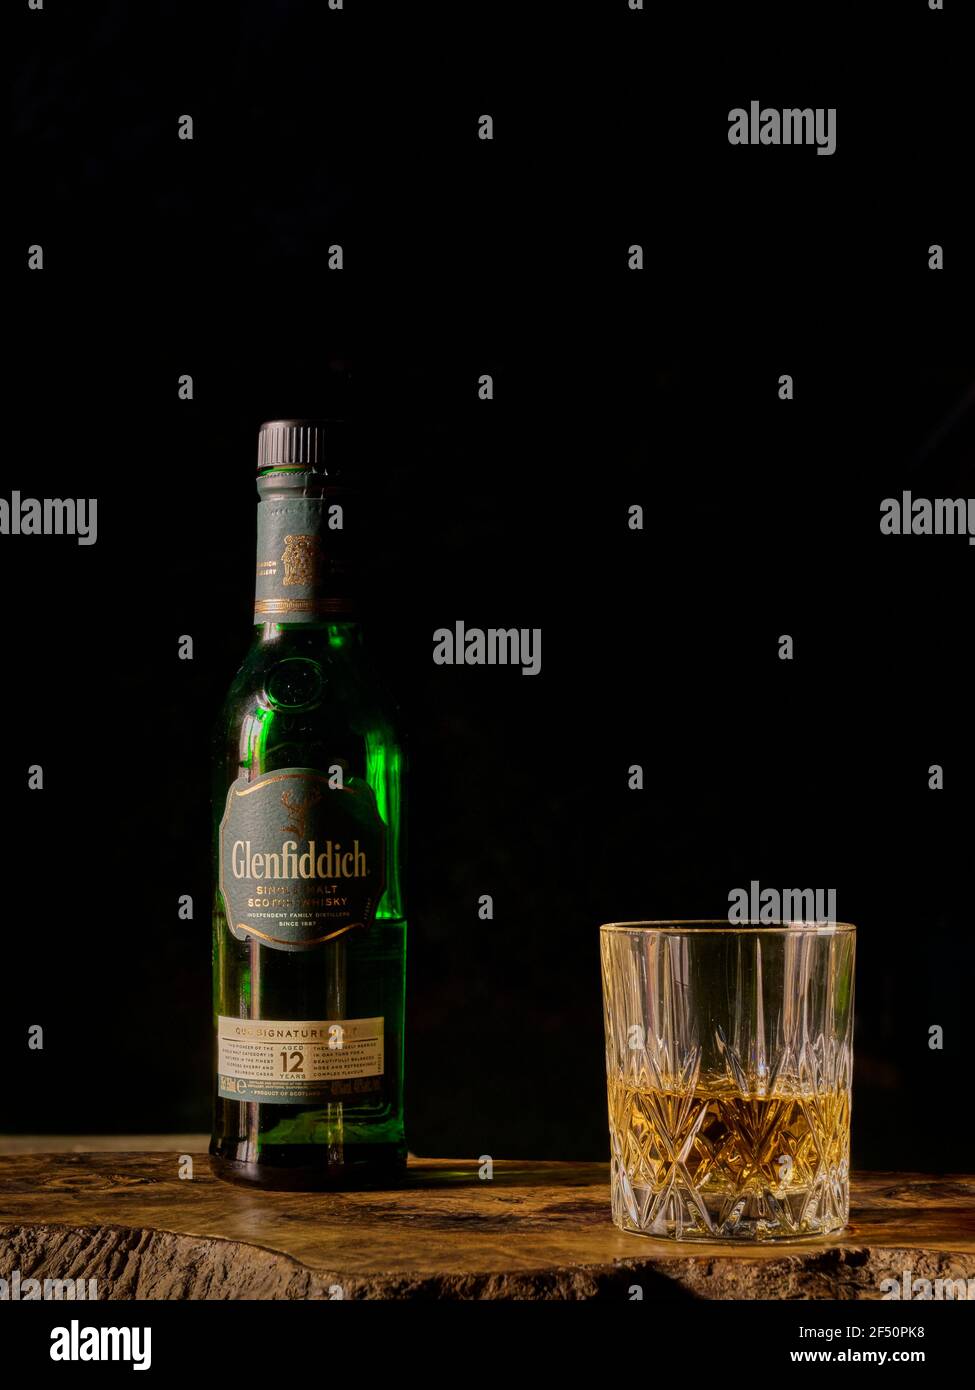 Glenfiddich Scotch Whisky Flasche und Glas halb gefüllt auf einem  Olivenholzbrett vor einem dunkelschwarzen Hintergrund Stockfotografie -  Alamy